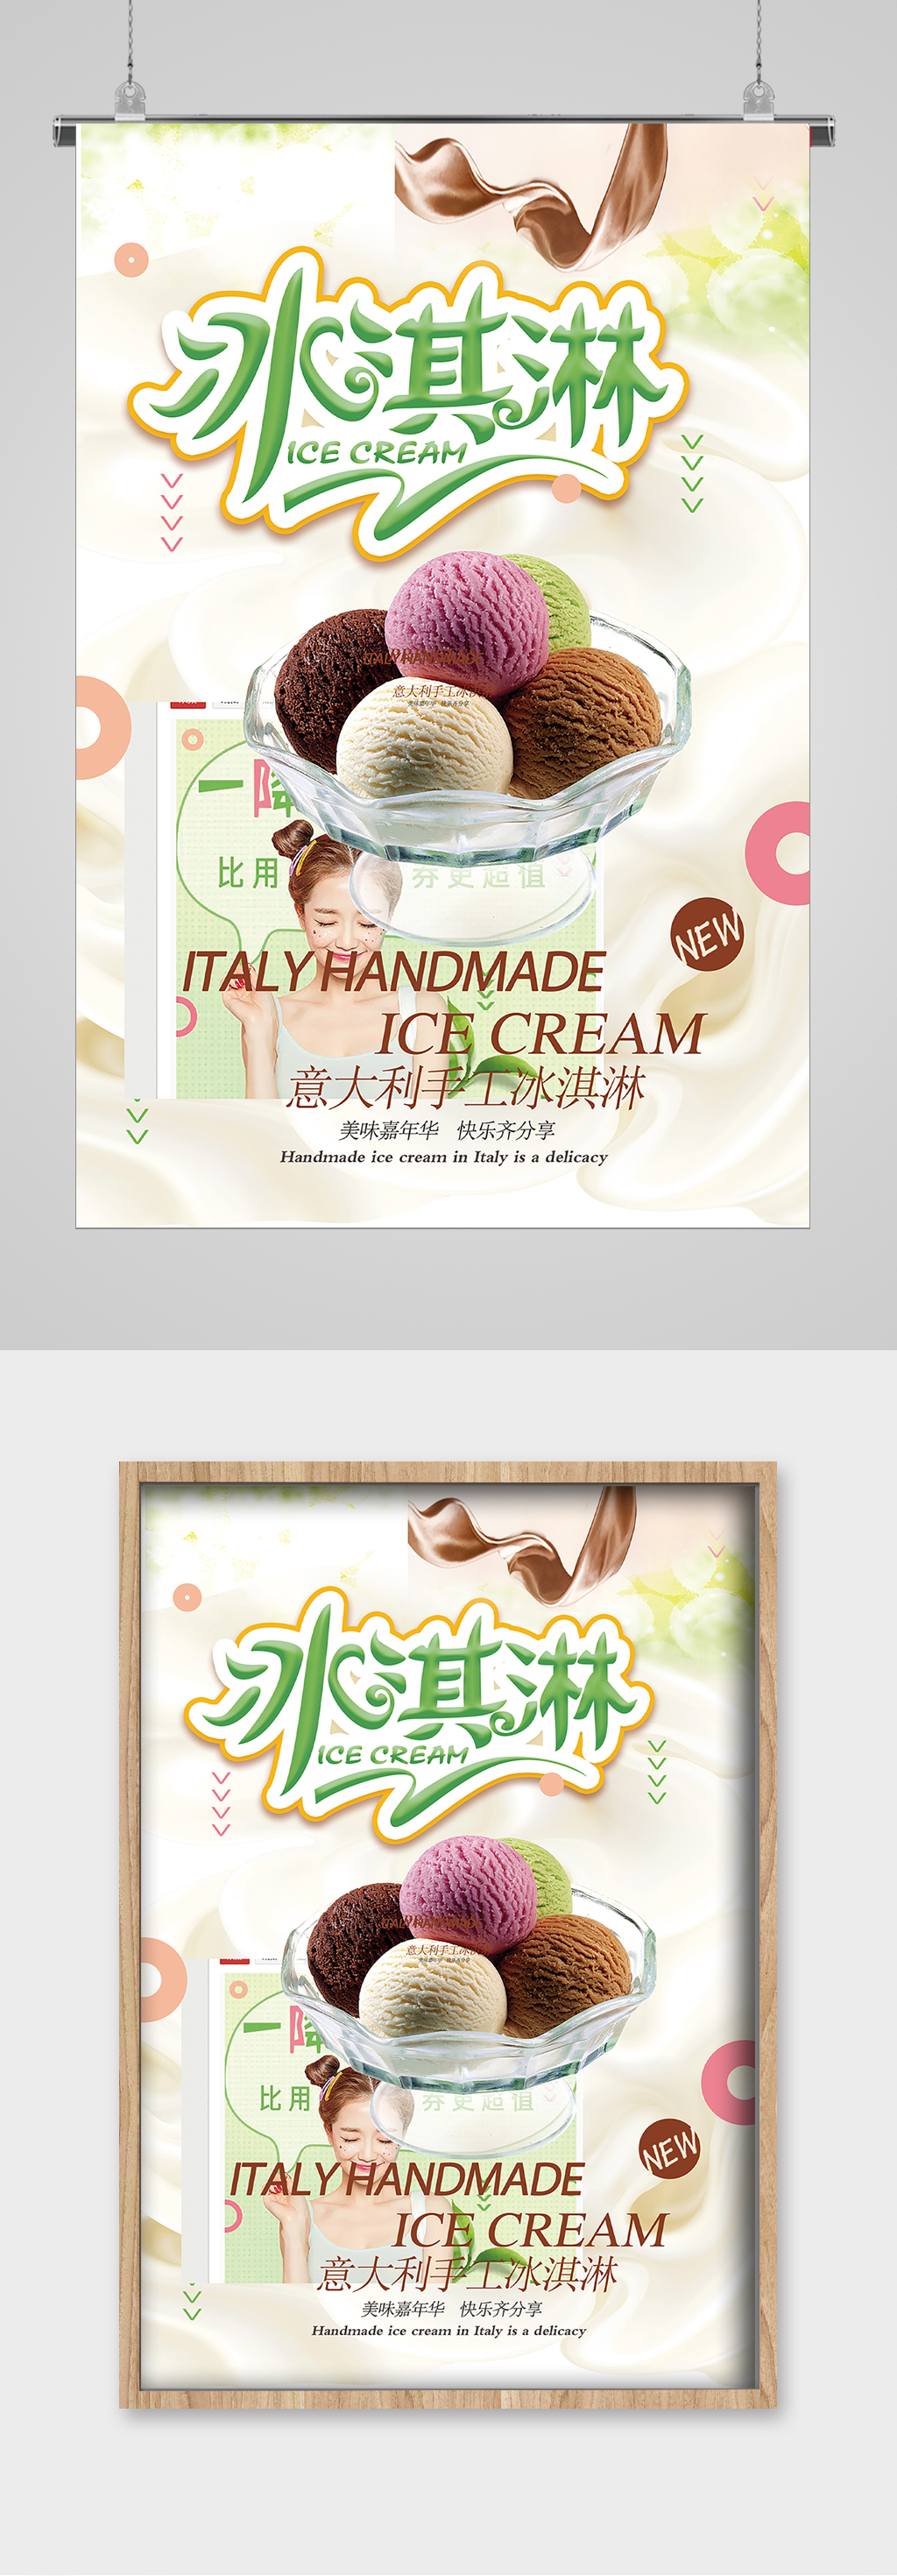 清爽夏日意大利冰淇淋海报